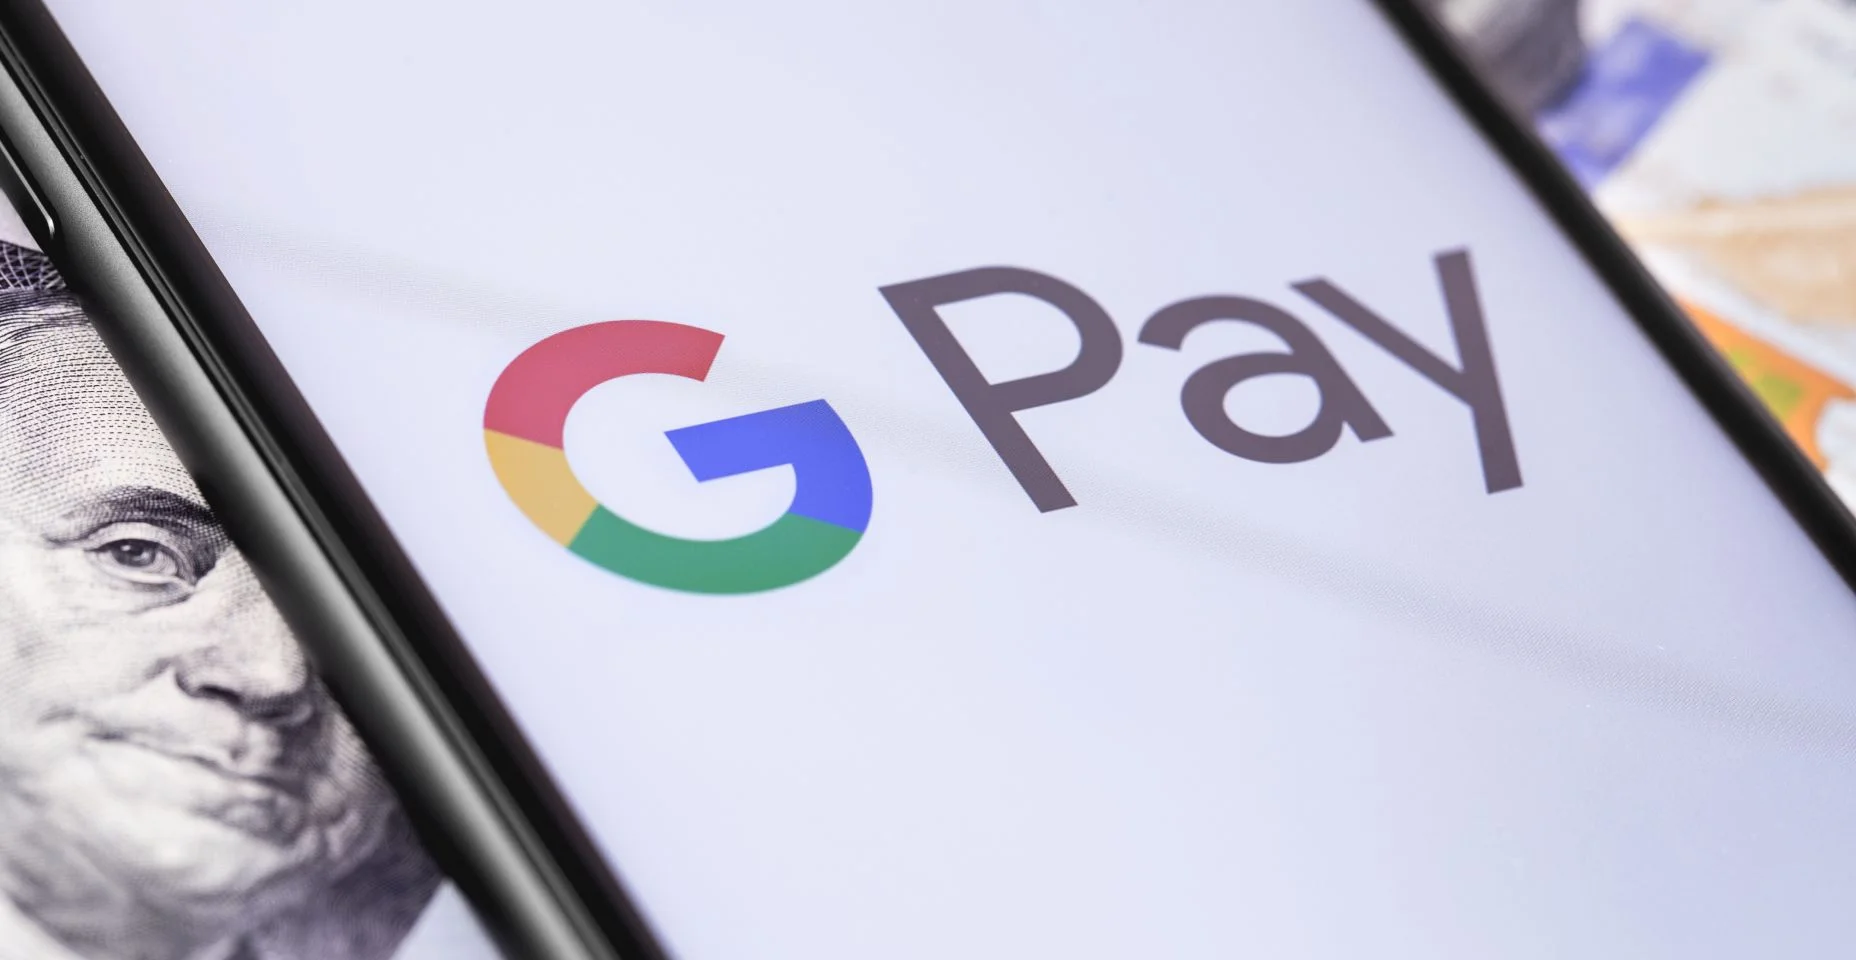 dinheiro, dólares e smartphone com o logotipo do Google Pay na tela. O Google Pay é um serviço de pagamento móvel e carteira digital do Google.